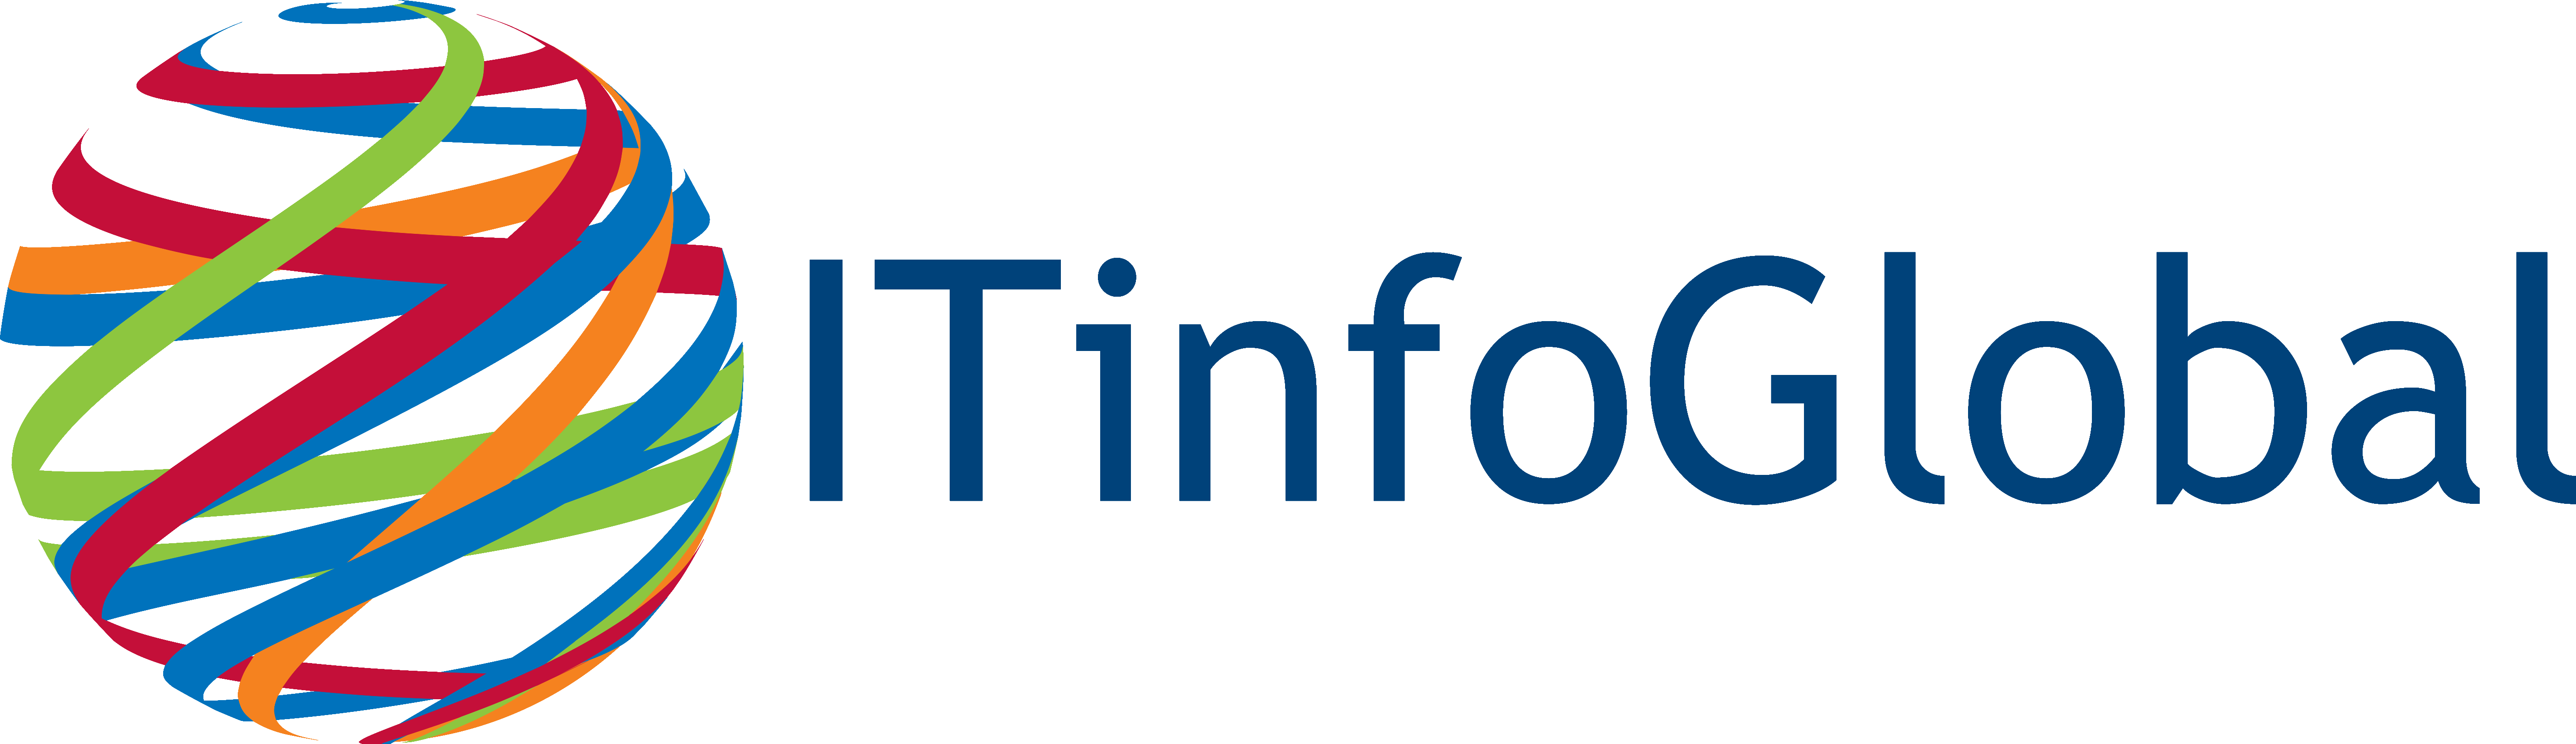 ITinfoGlobal